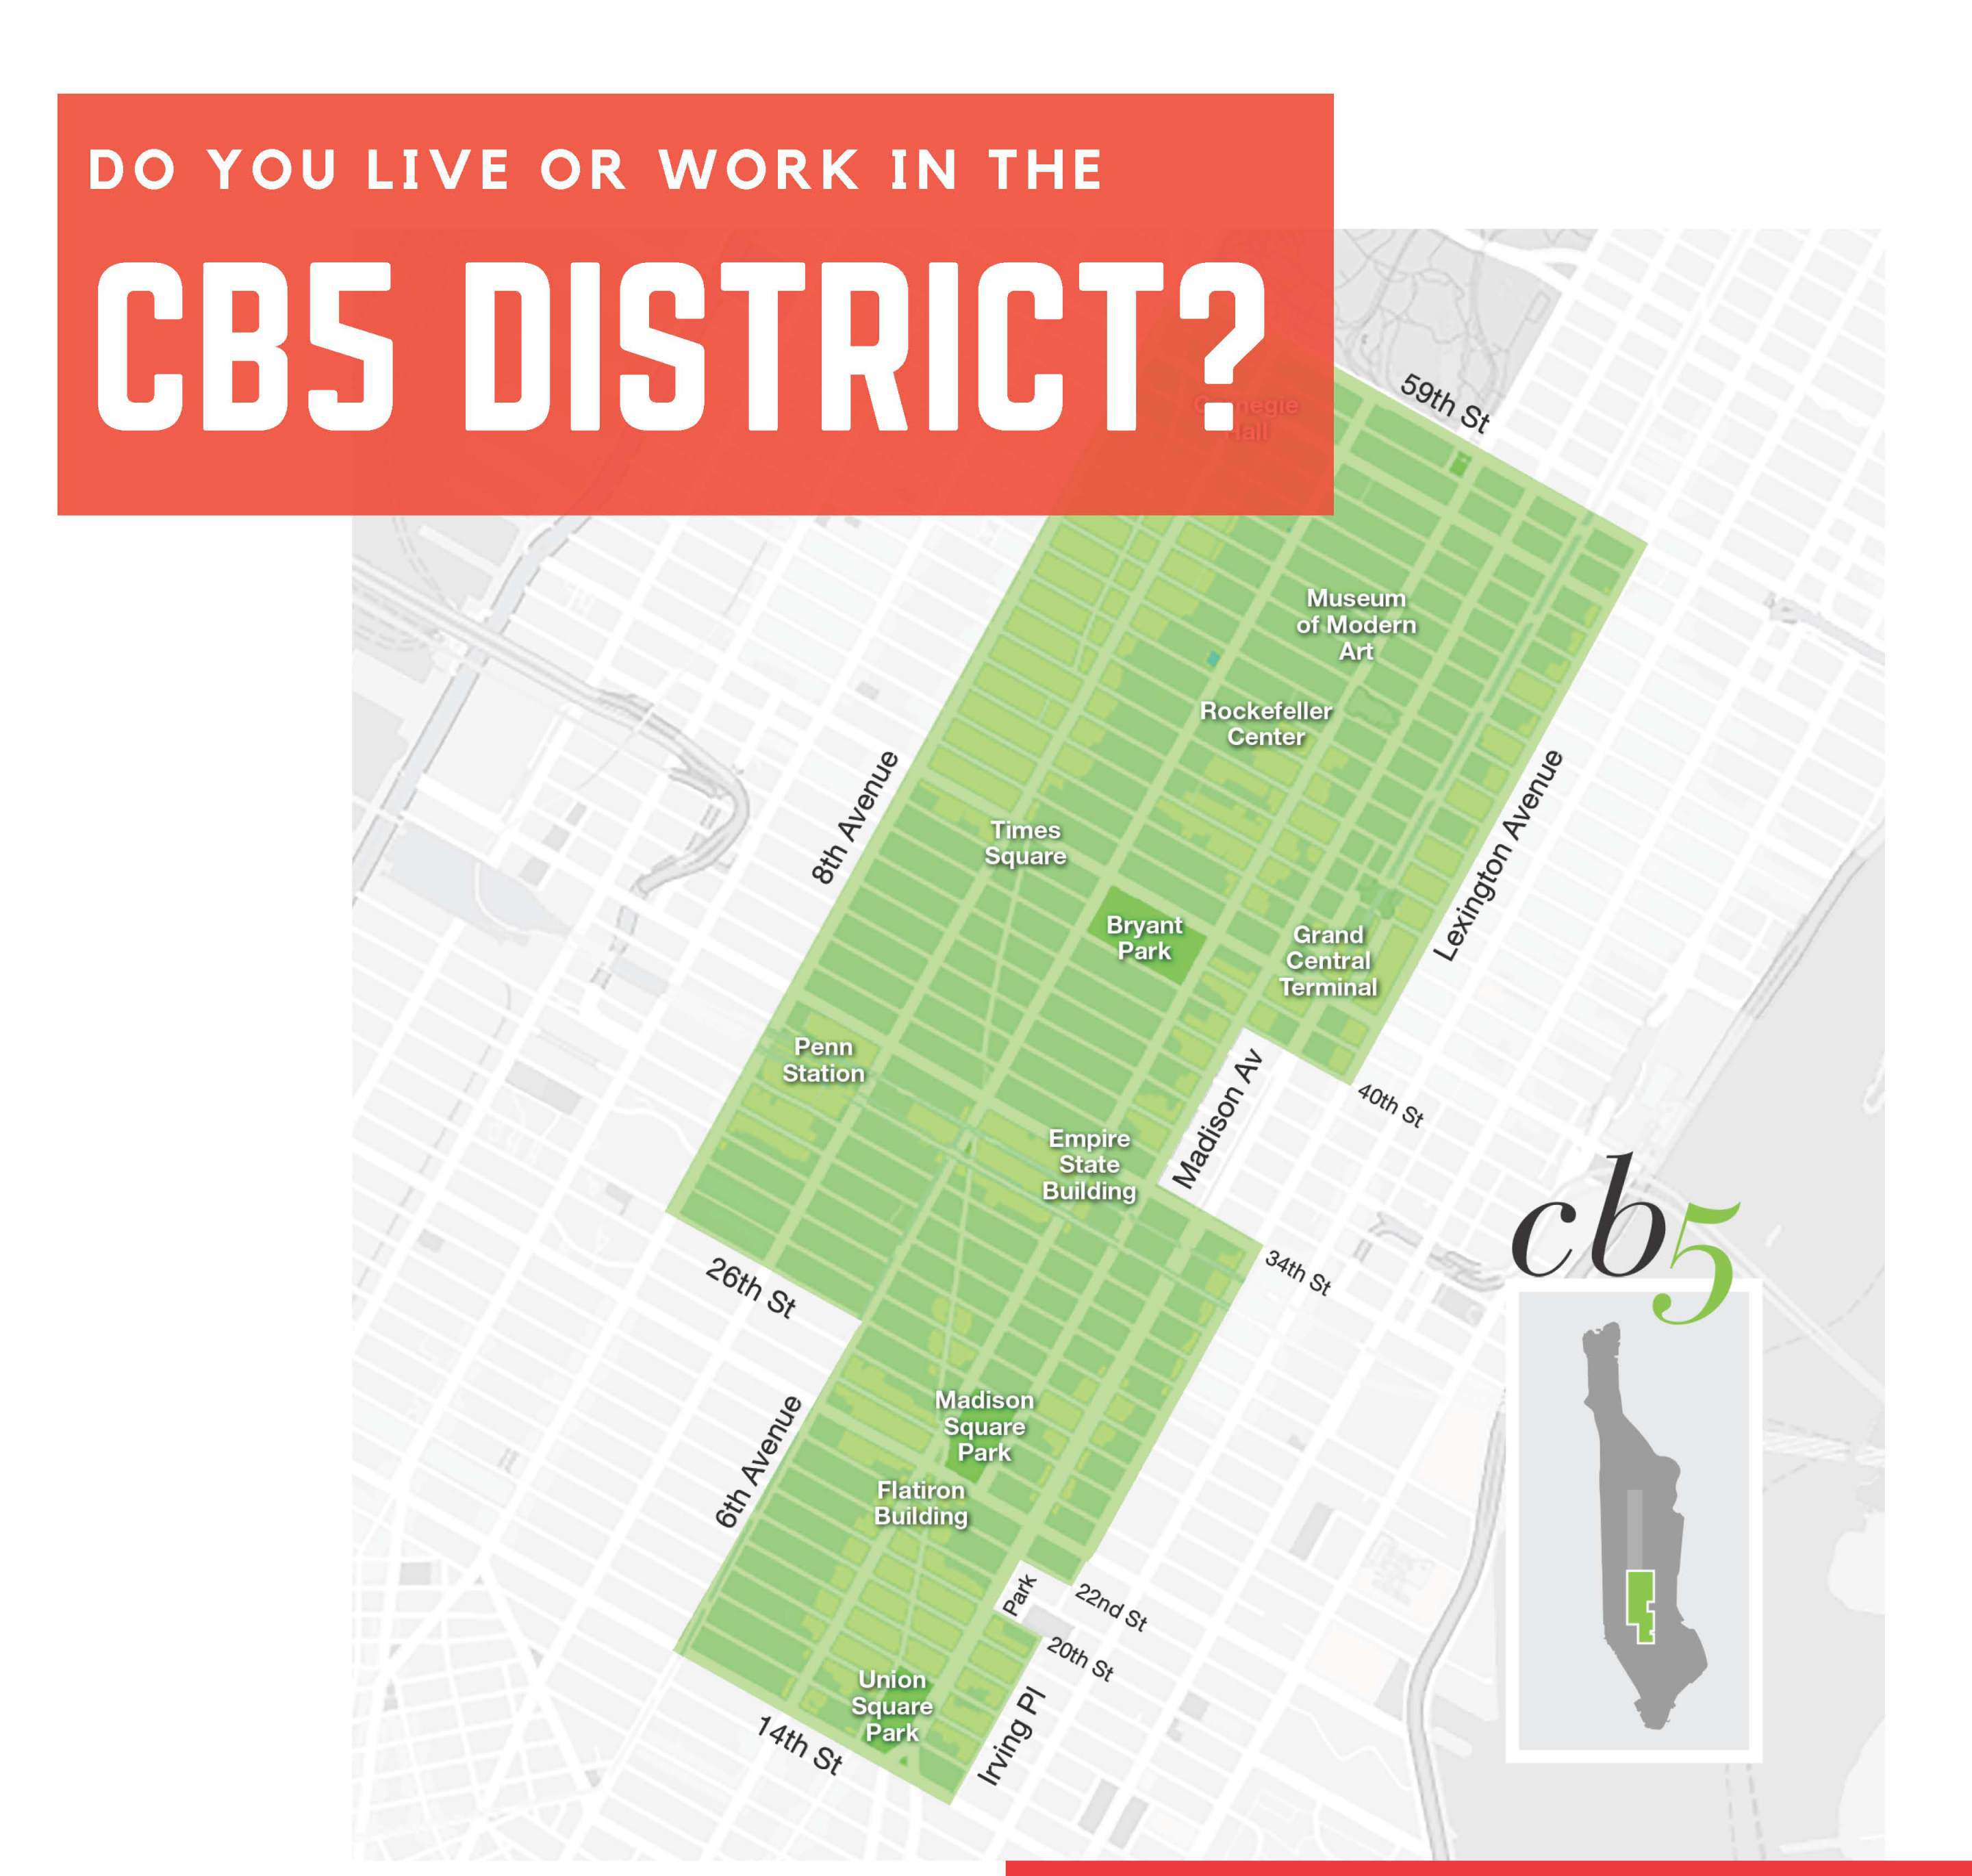 Banner Photo: CB5 District Survey 